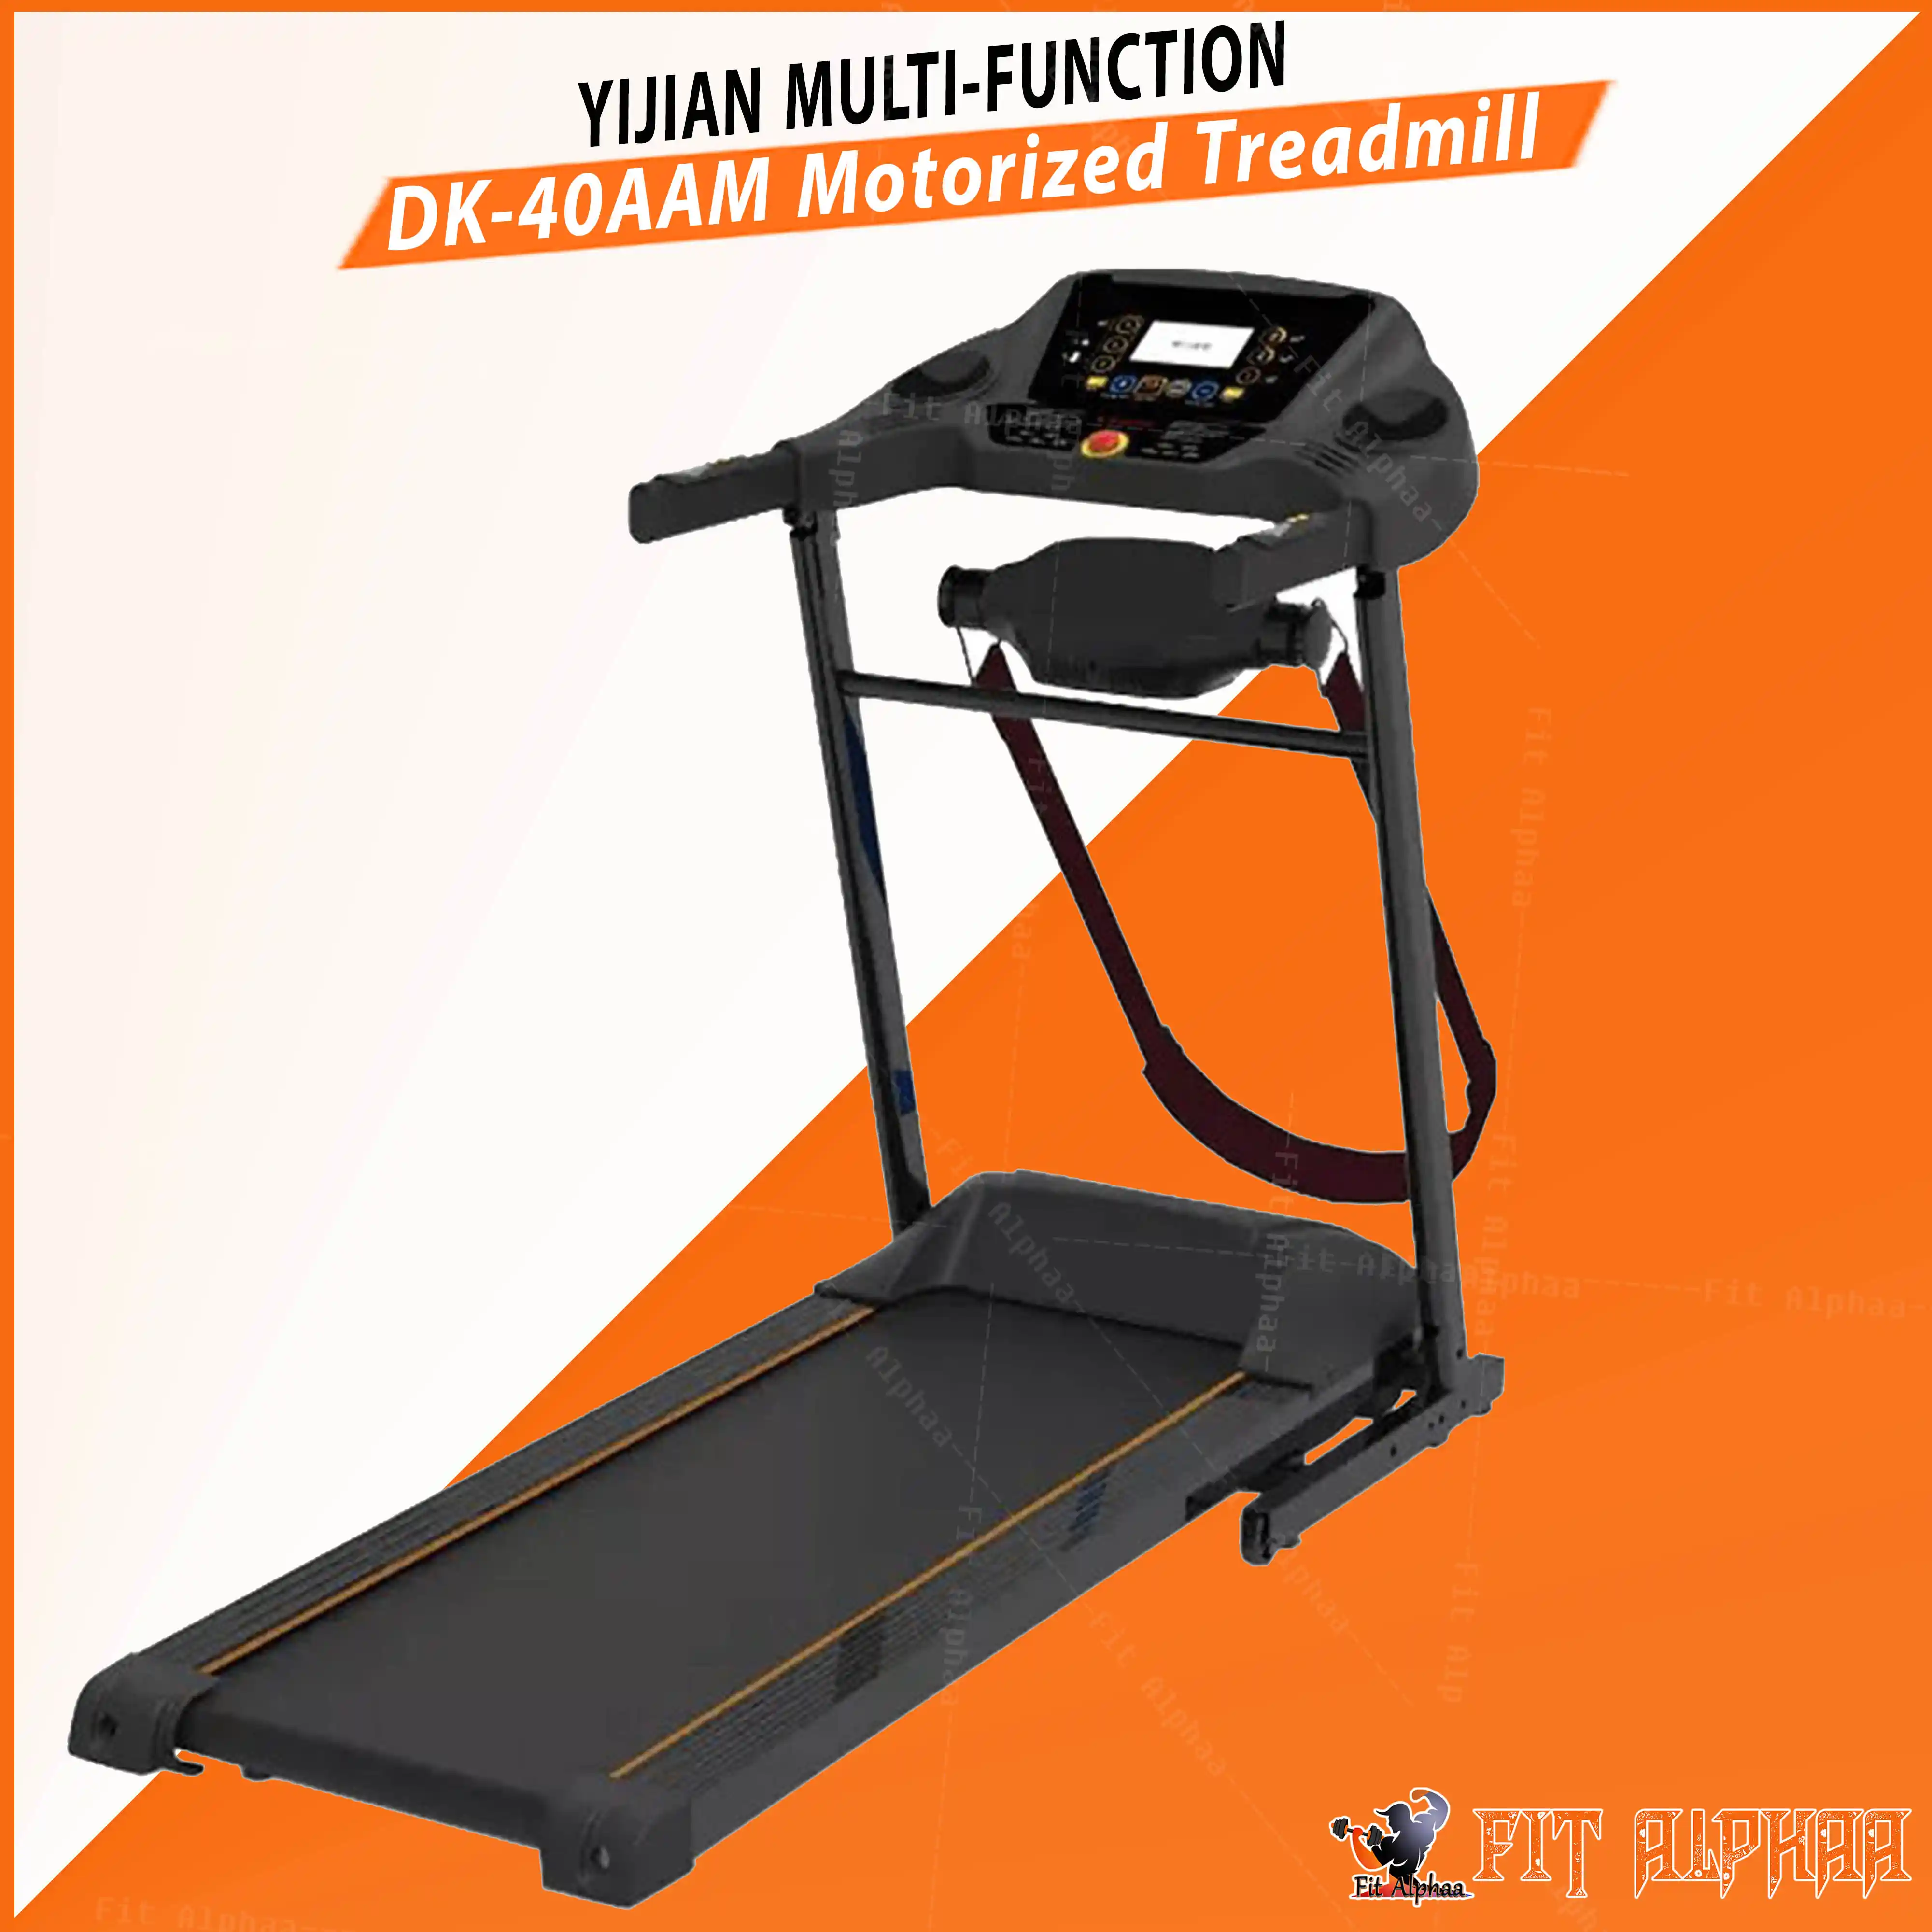 Yijian DK 40AAM Multi function Foldable Motorized Treadmill